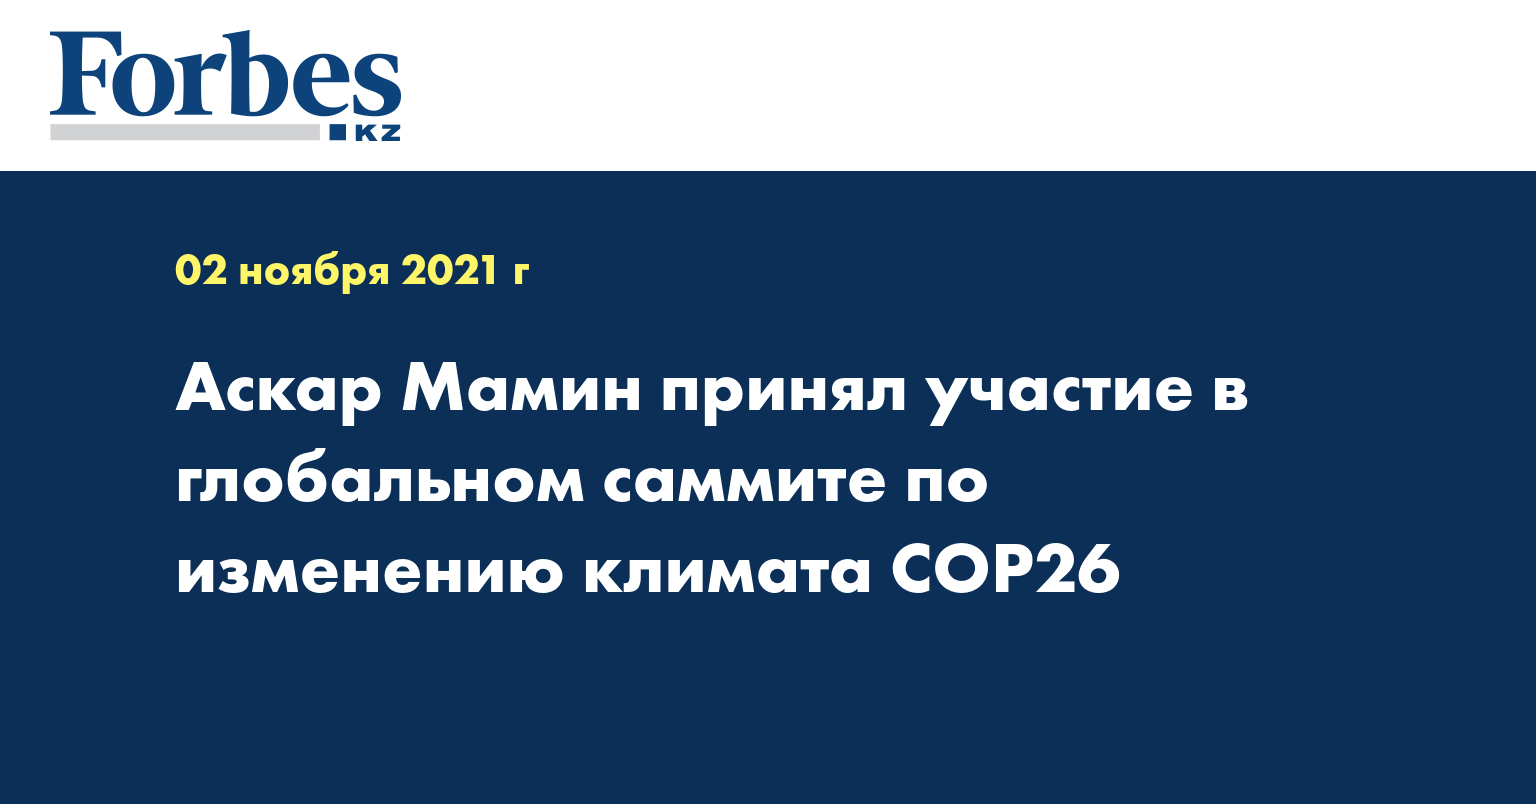 Аскар Мамин принял участие в глобальном саммите по изменению климата COP26